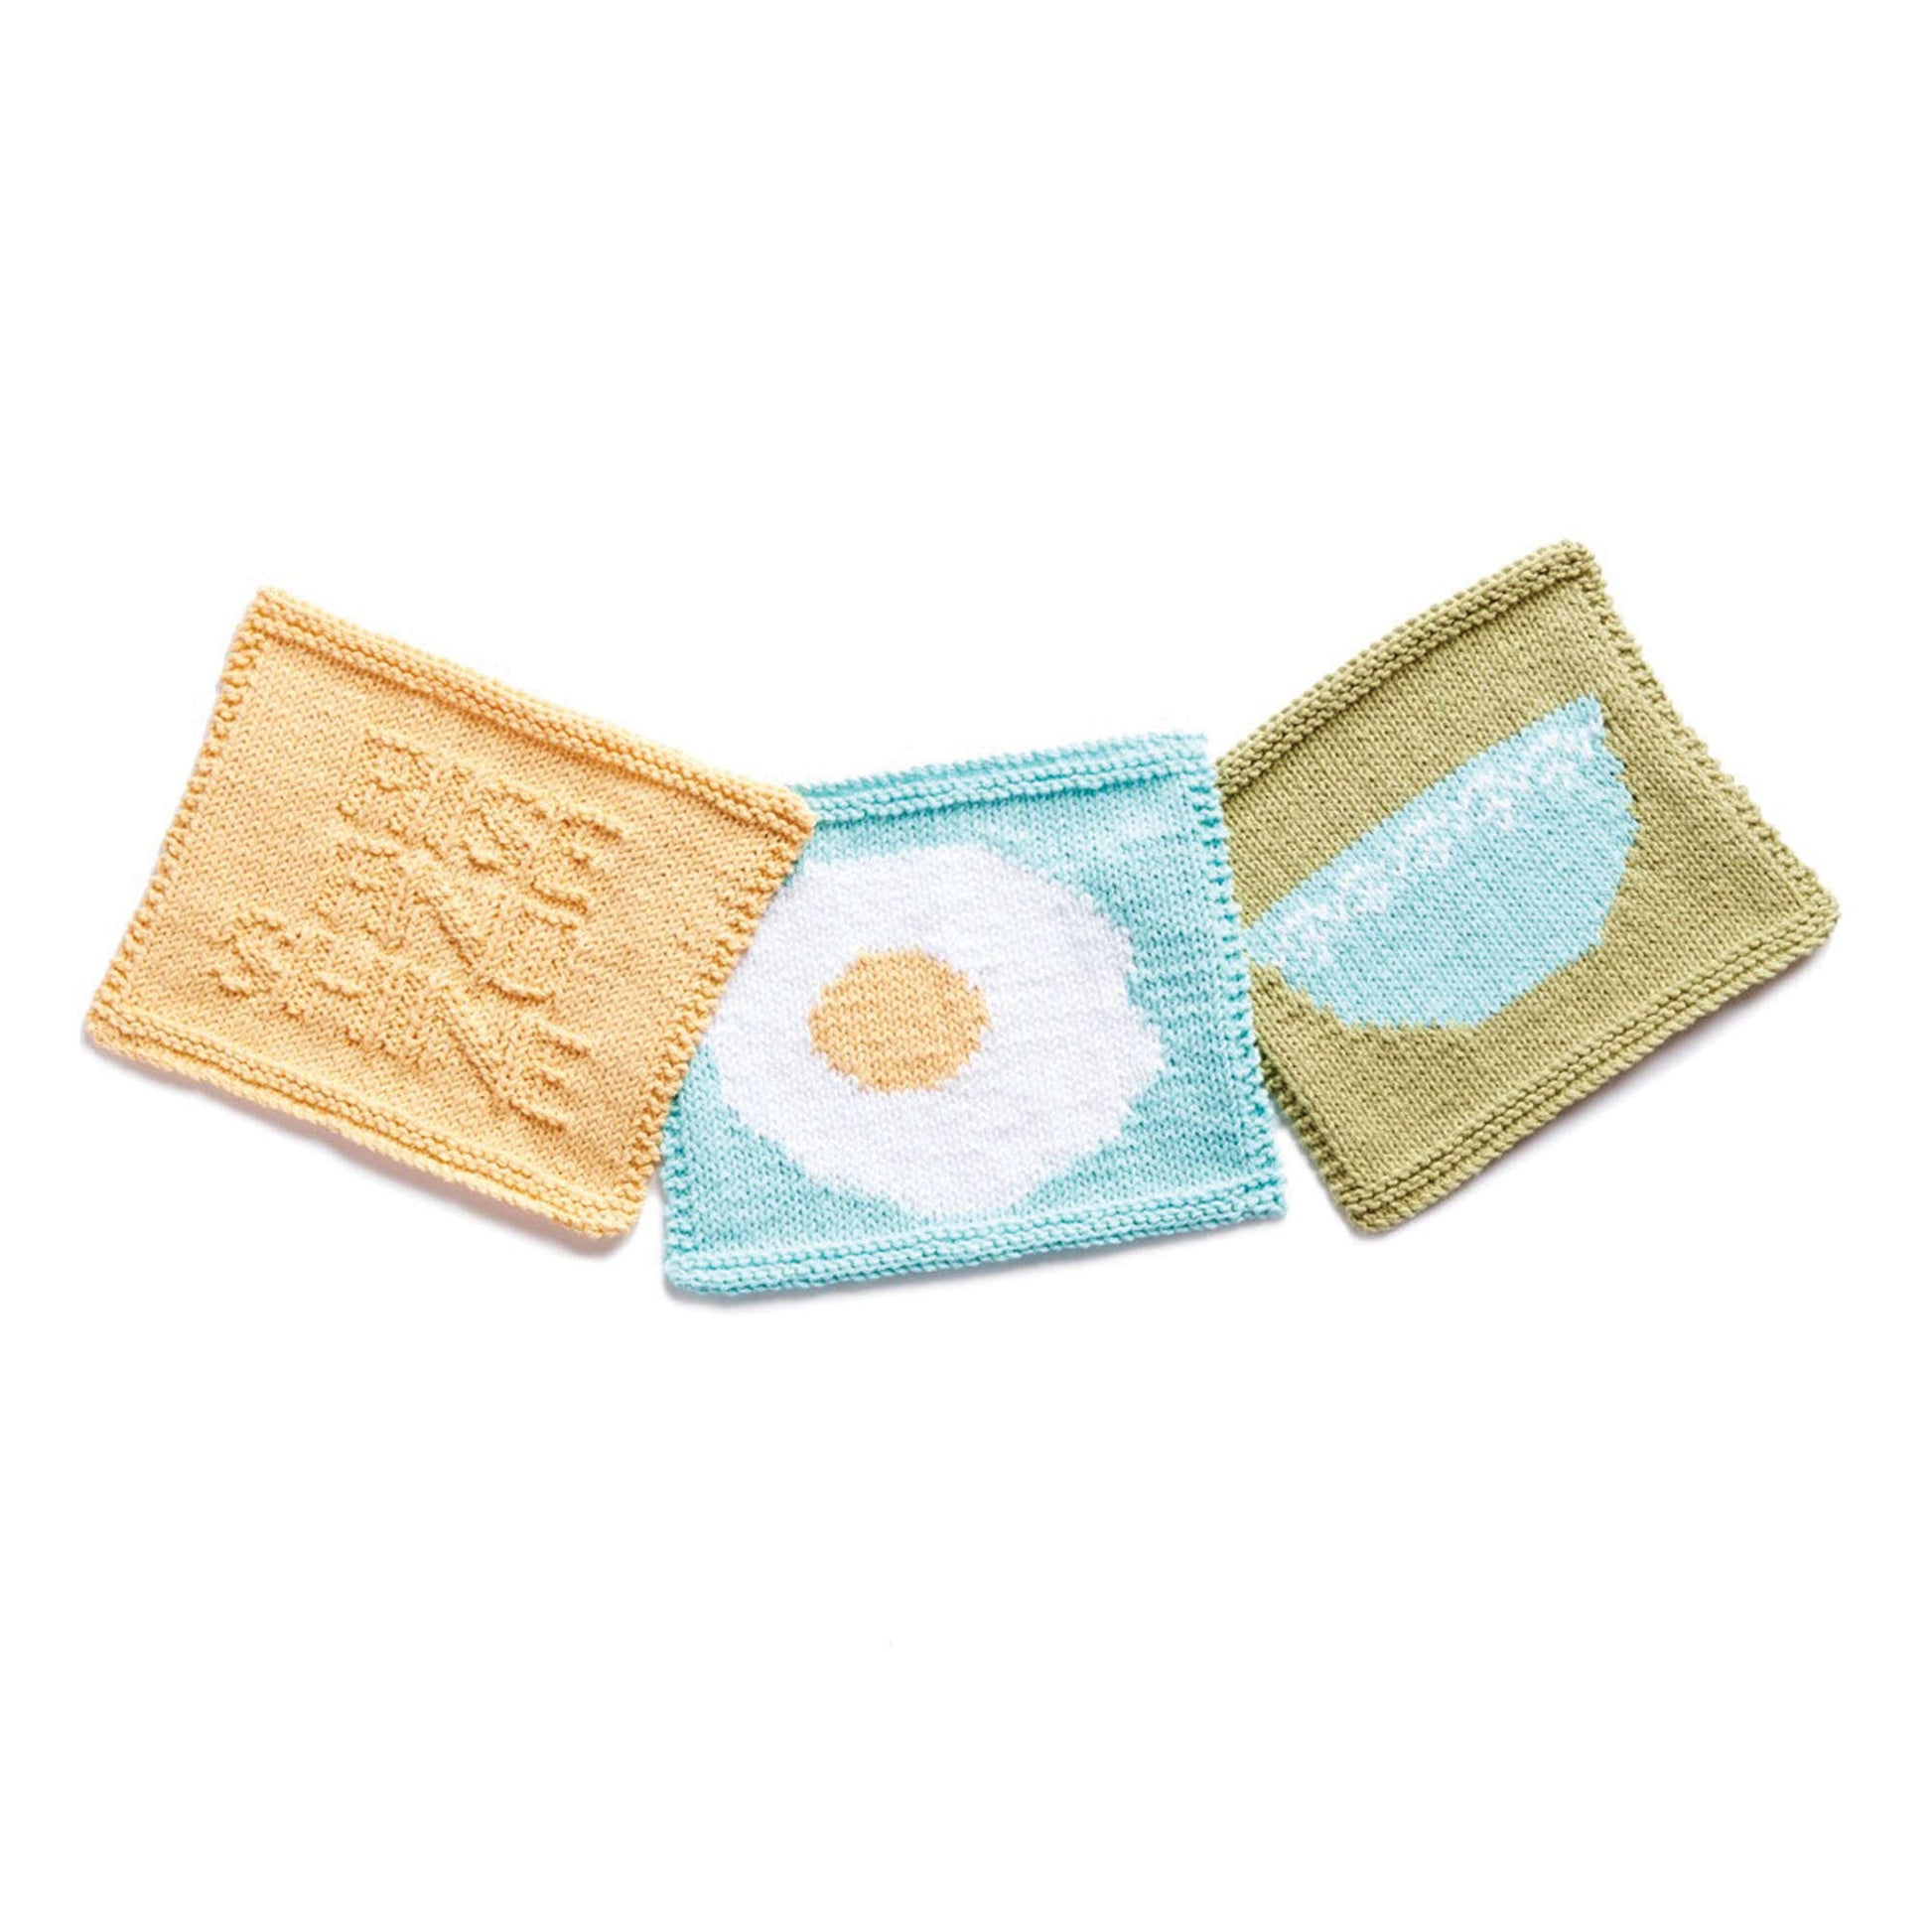 Free Lily Sugar'n Cream Breakfast Dishcloth Knit Trio Pattern